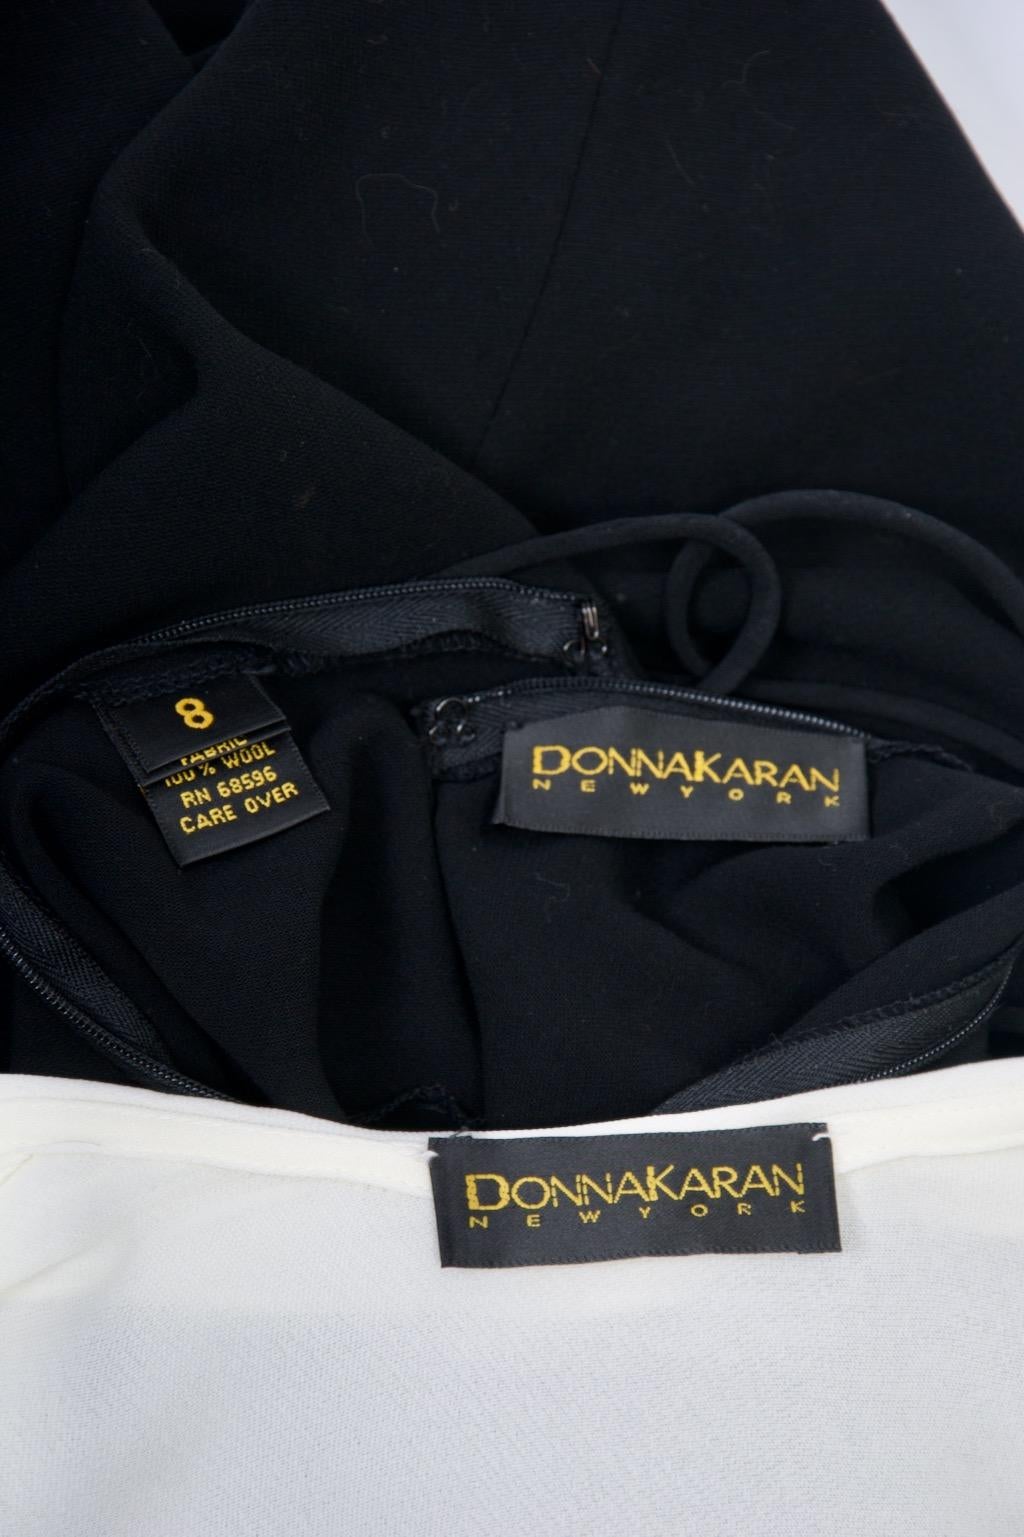 Donna Karan Vintage Jumper and Bodysuit For Sale 11